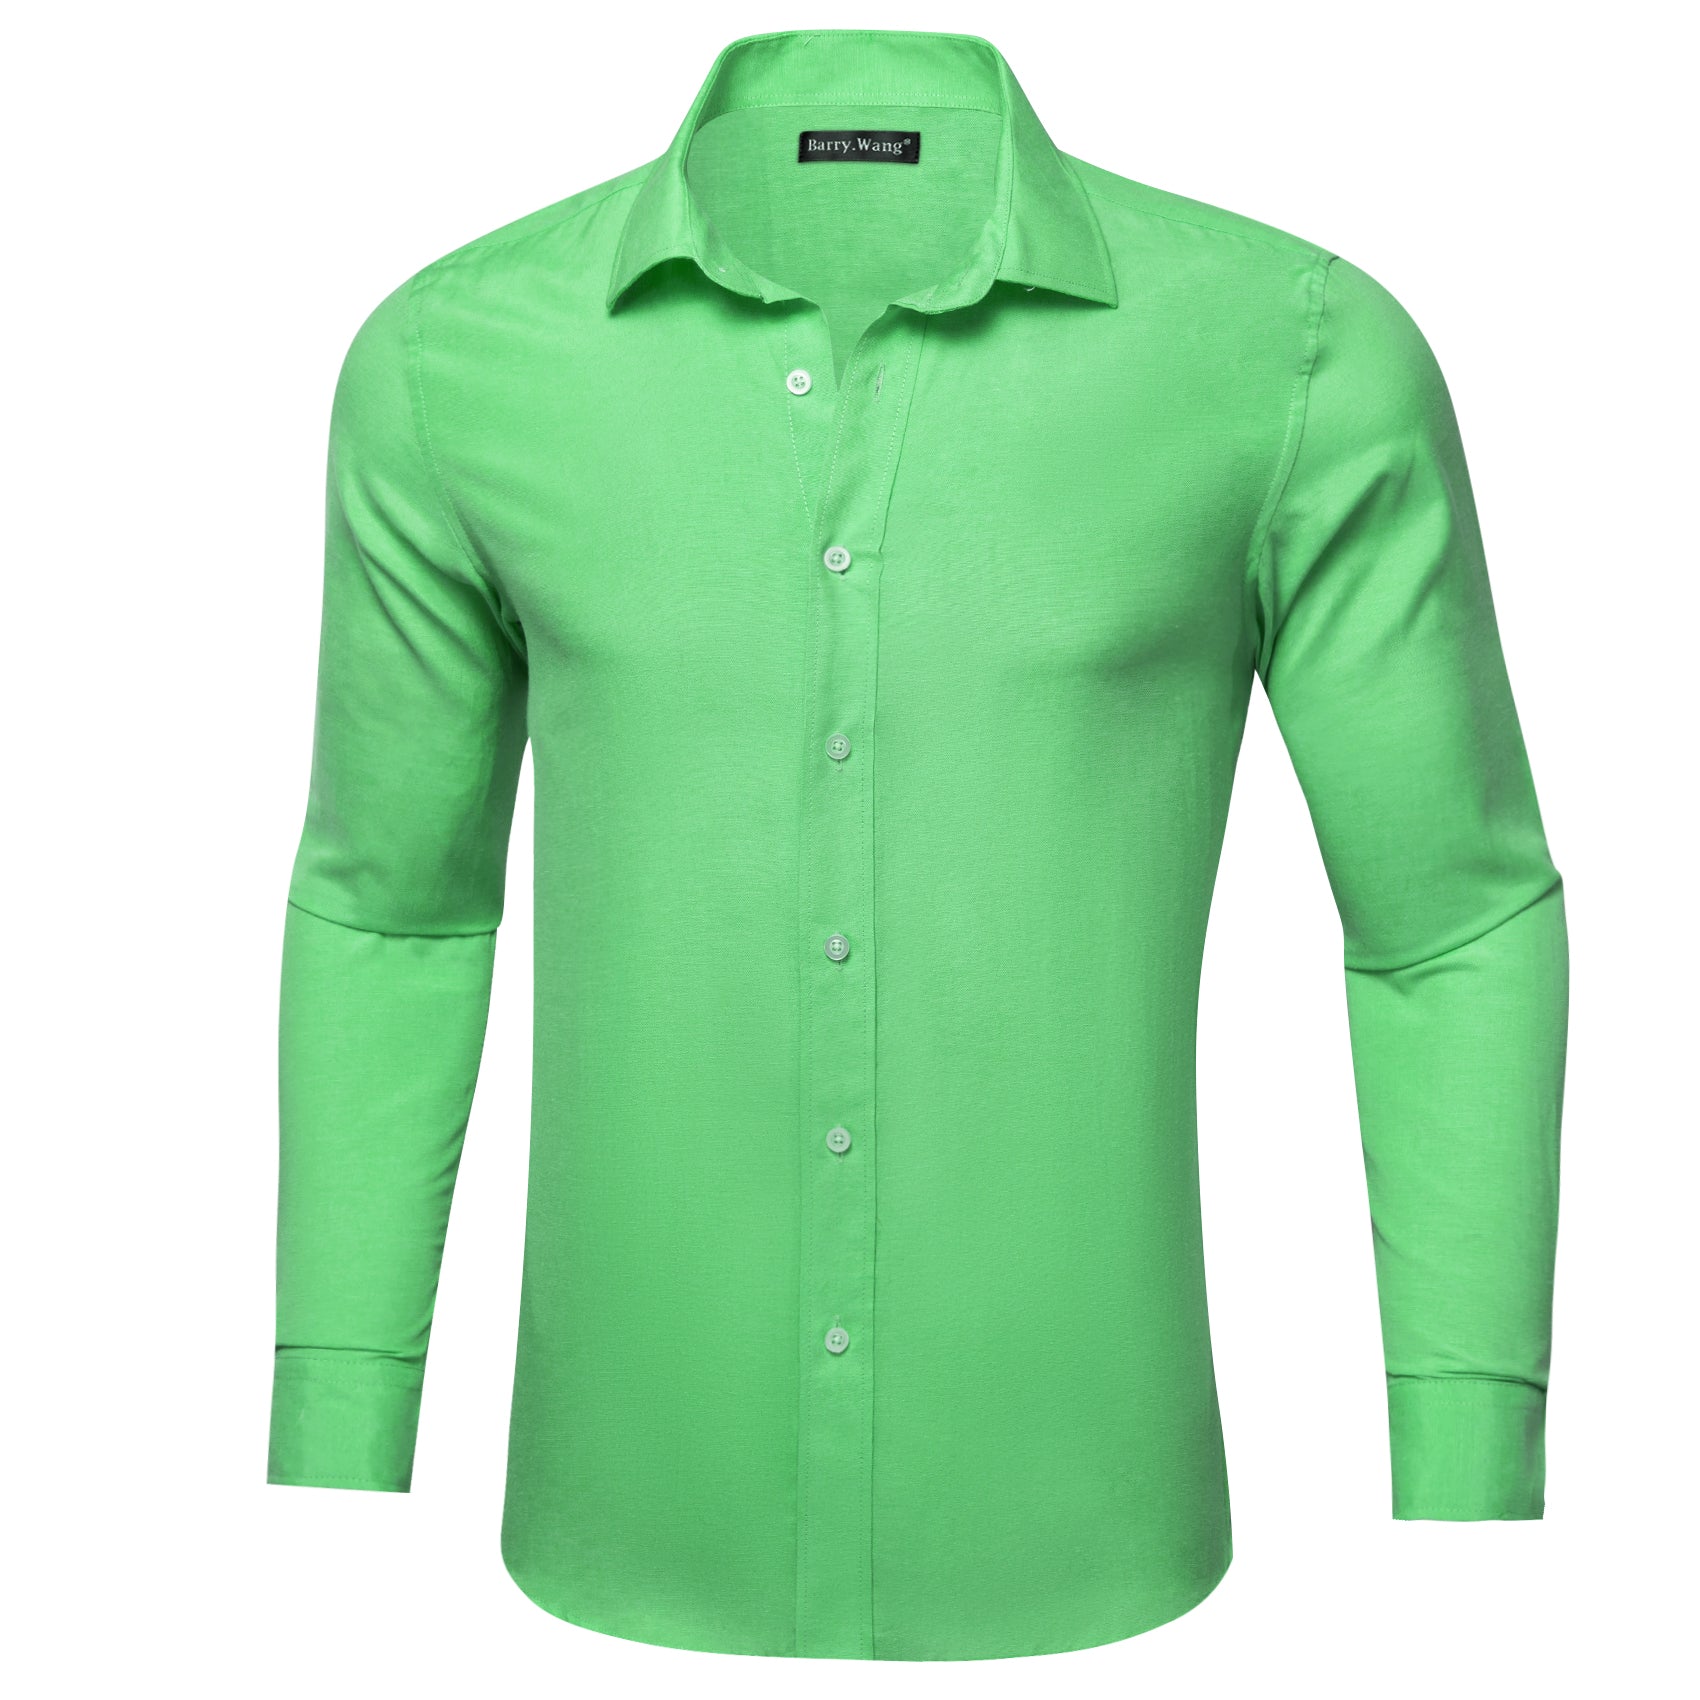 Barry.wang Cobalt Green Solid Men's Shirt